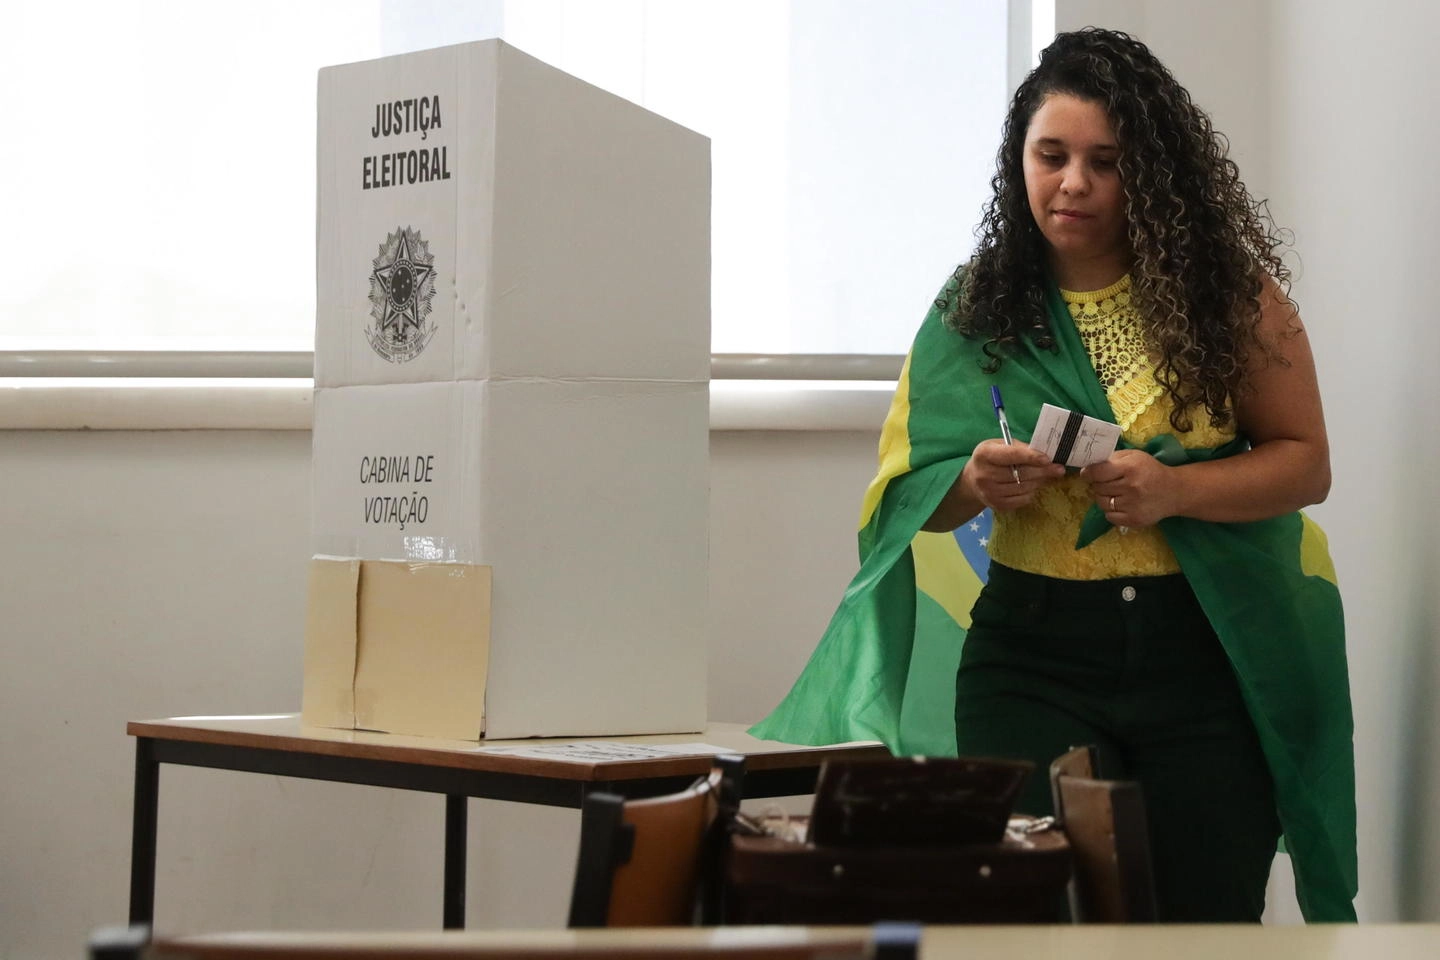 Una donna vota per le elezioni in Brasile (Ansa)